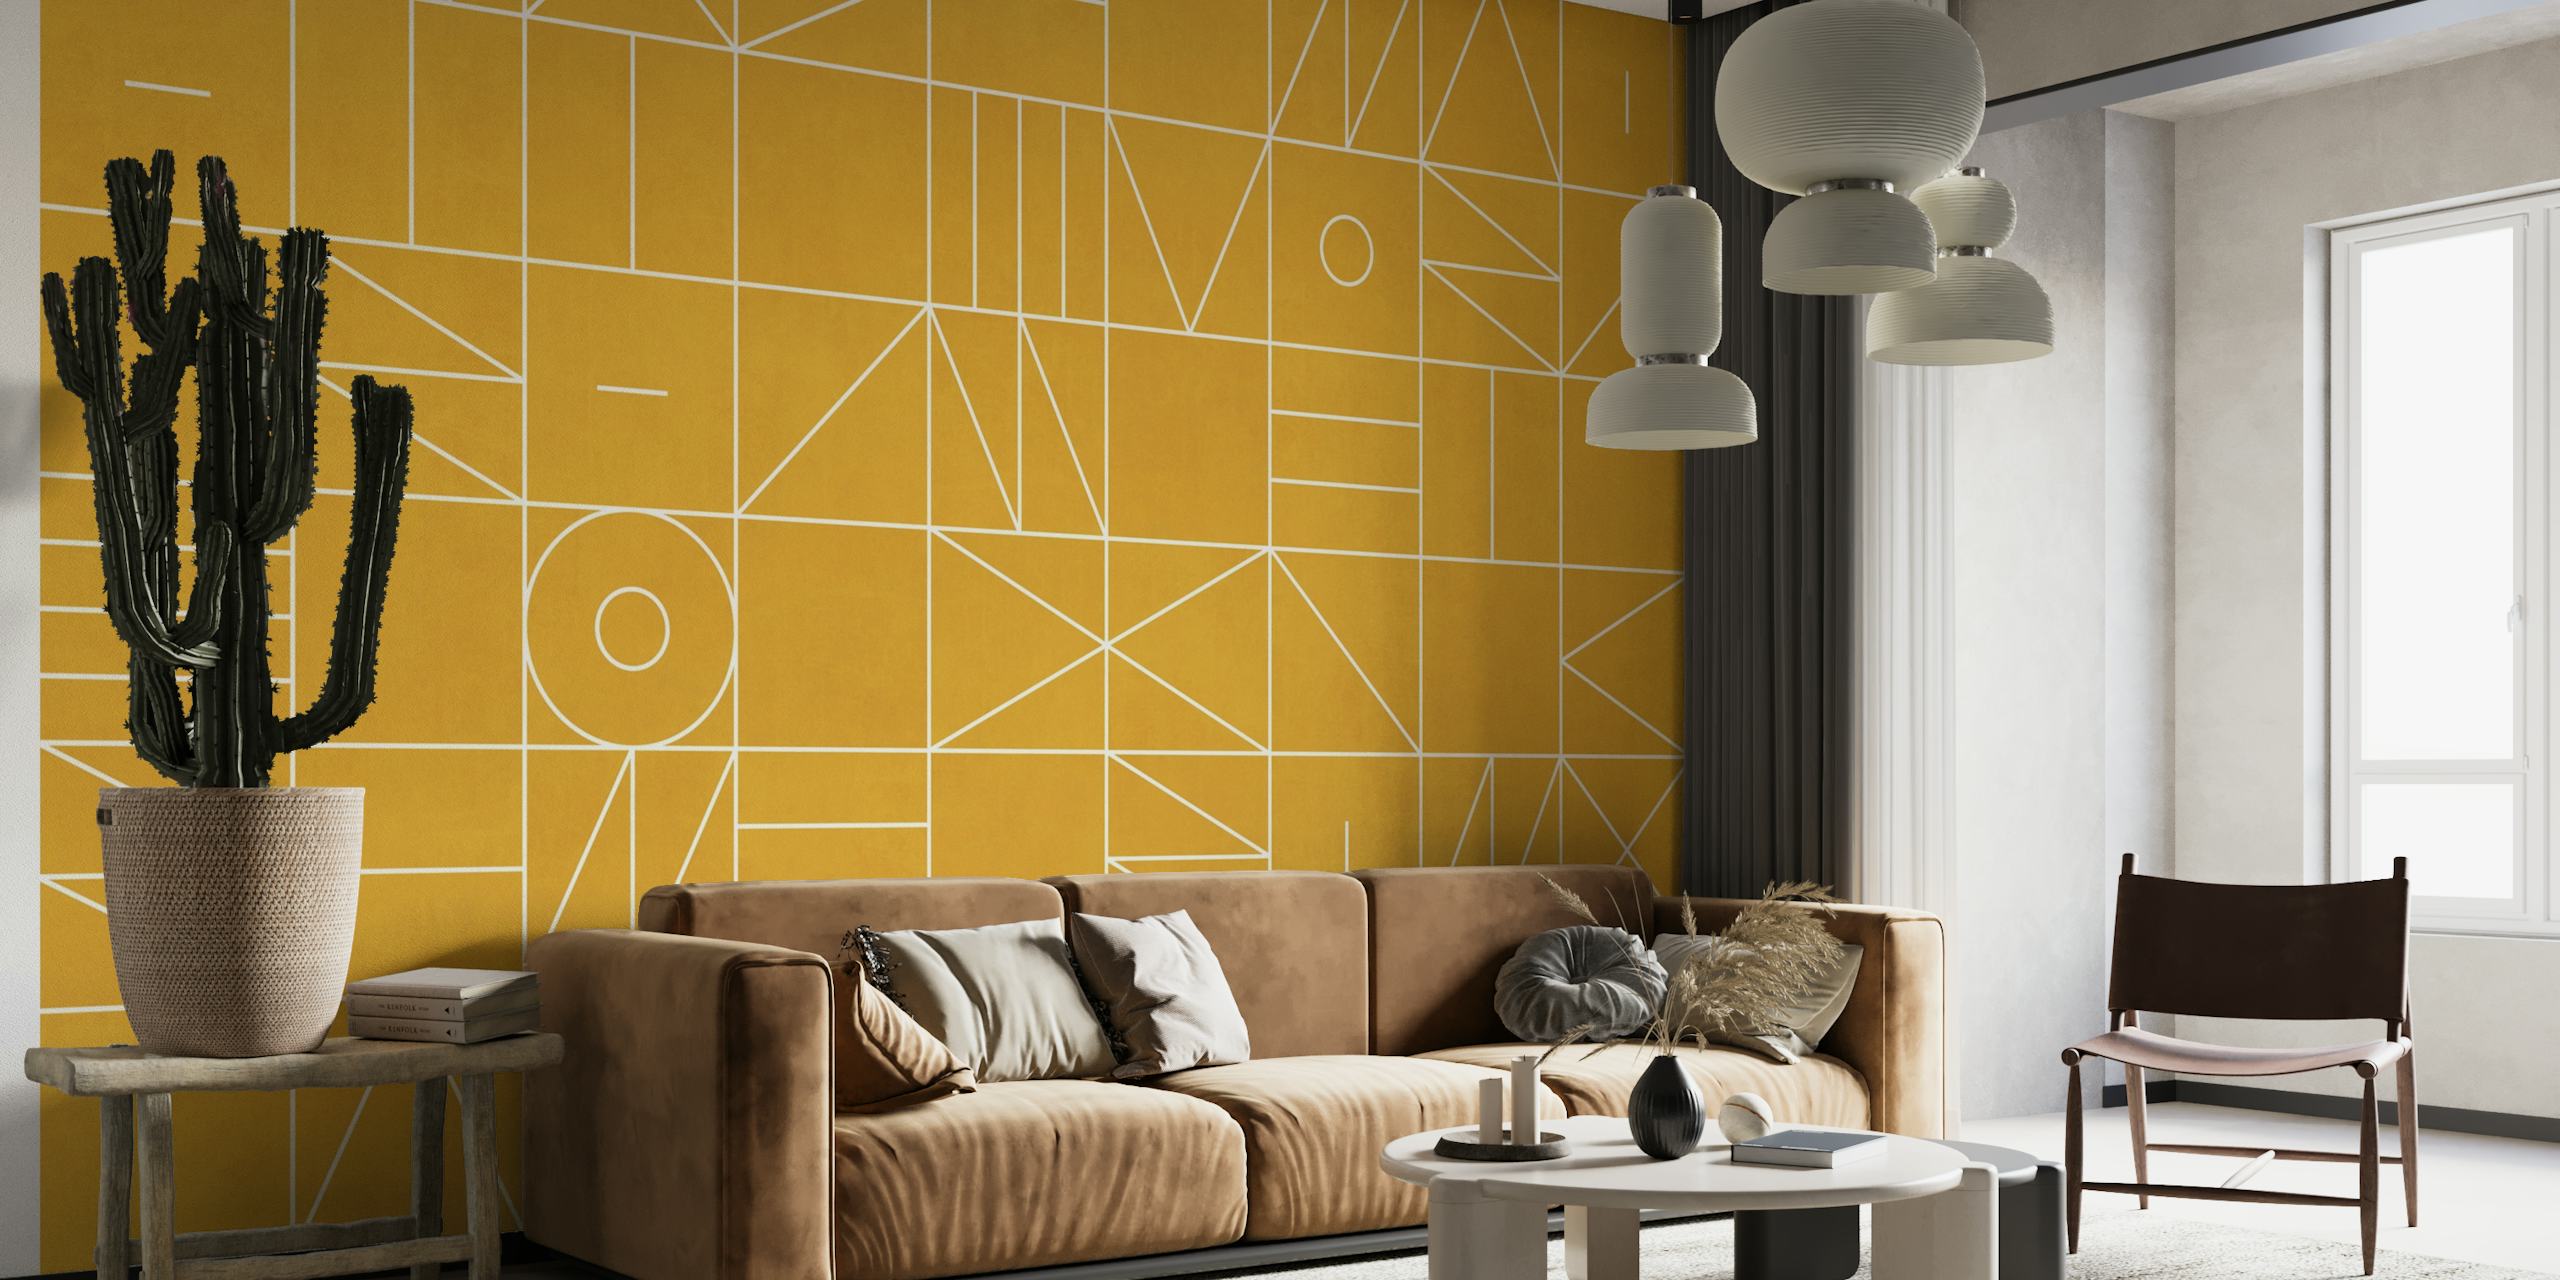 Zidna slika s geometrijskim uzorkom u zlatnoj nijansi s apstraktnim oblicima i linijama